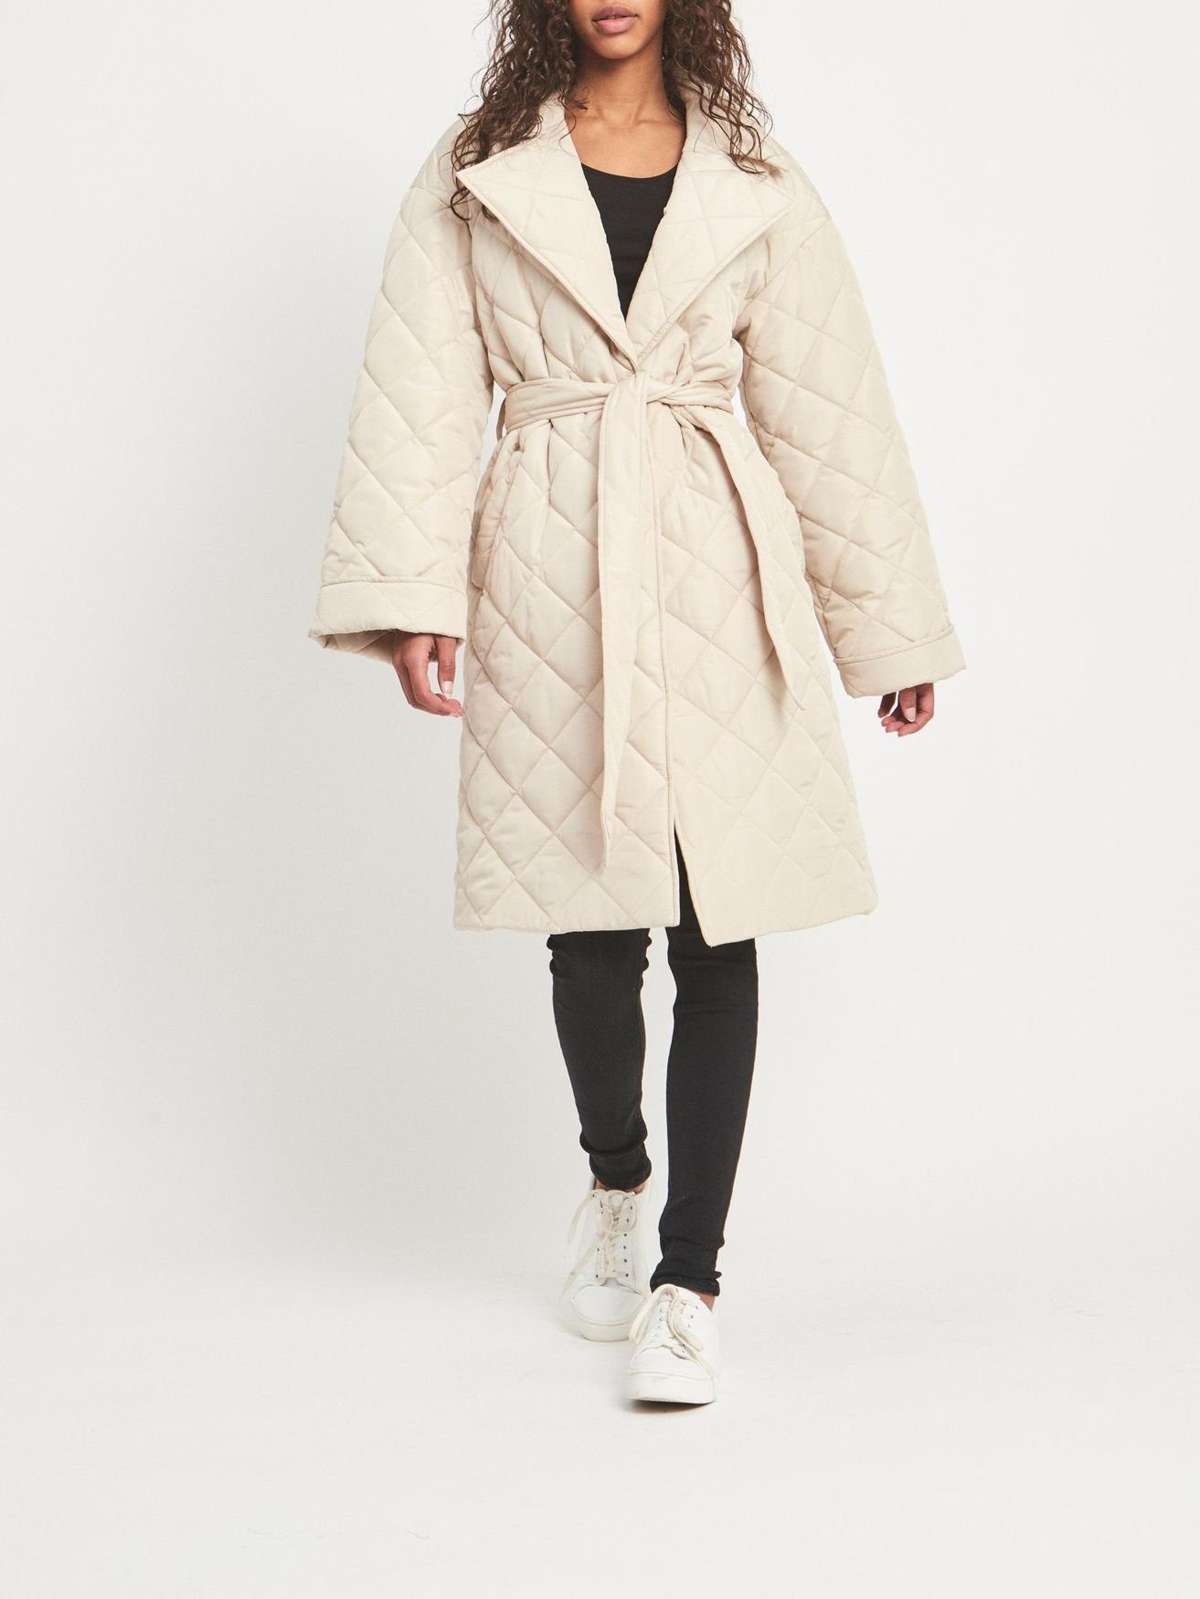 Короткое пальто, переходное пальто на легкой подкладке, удлиненная стеганая куртка VICHRIS 4625 бежевого цвета.